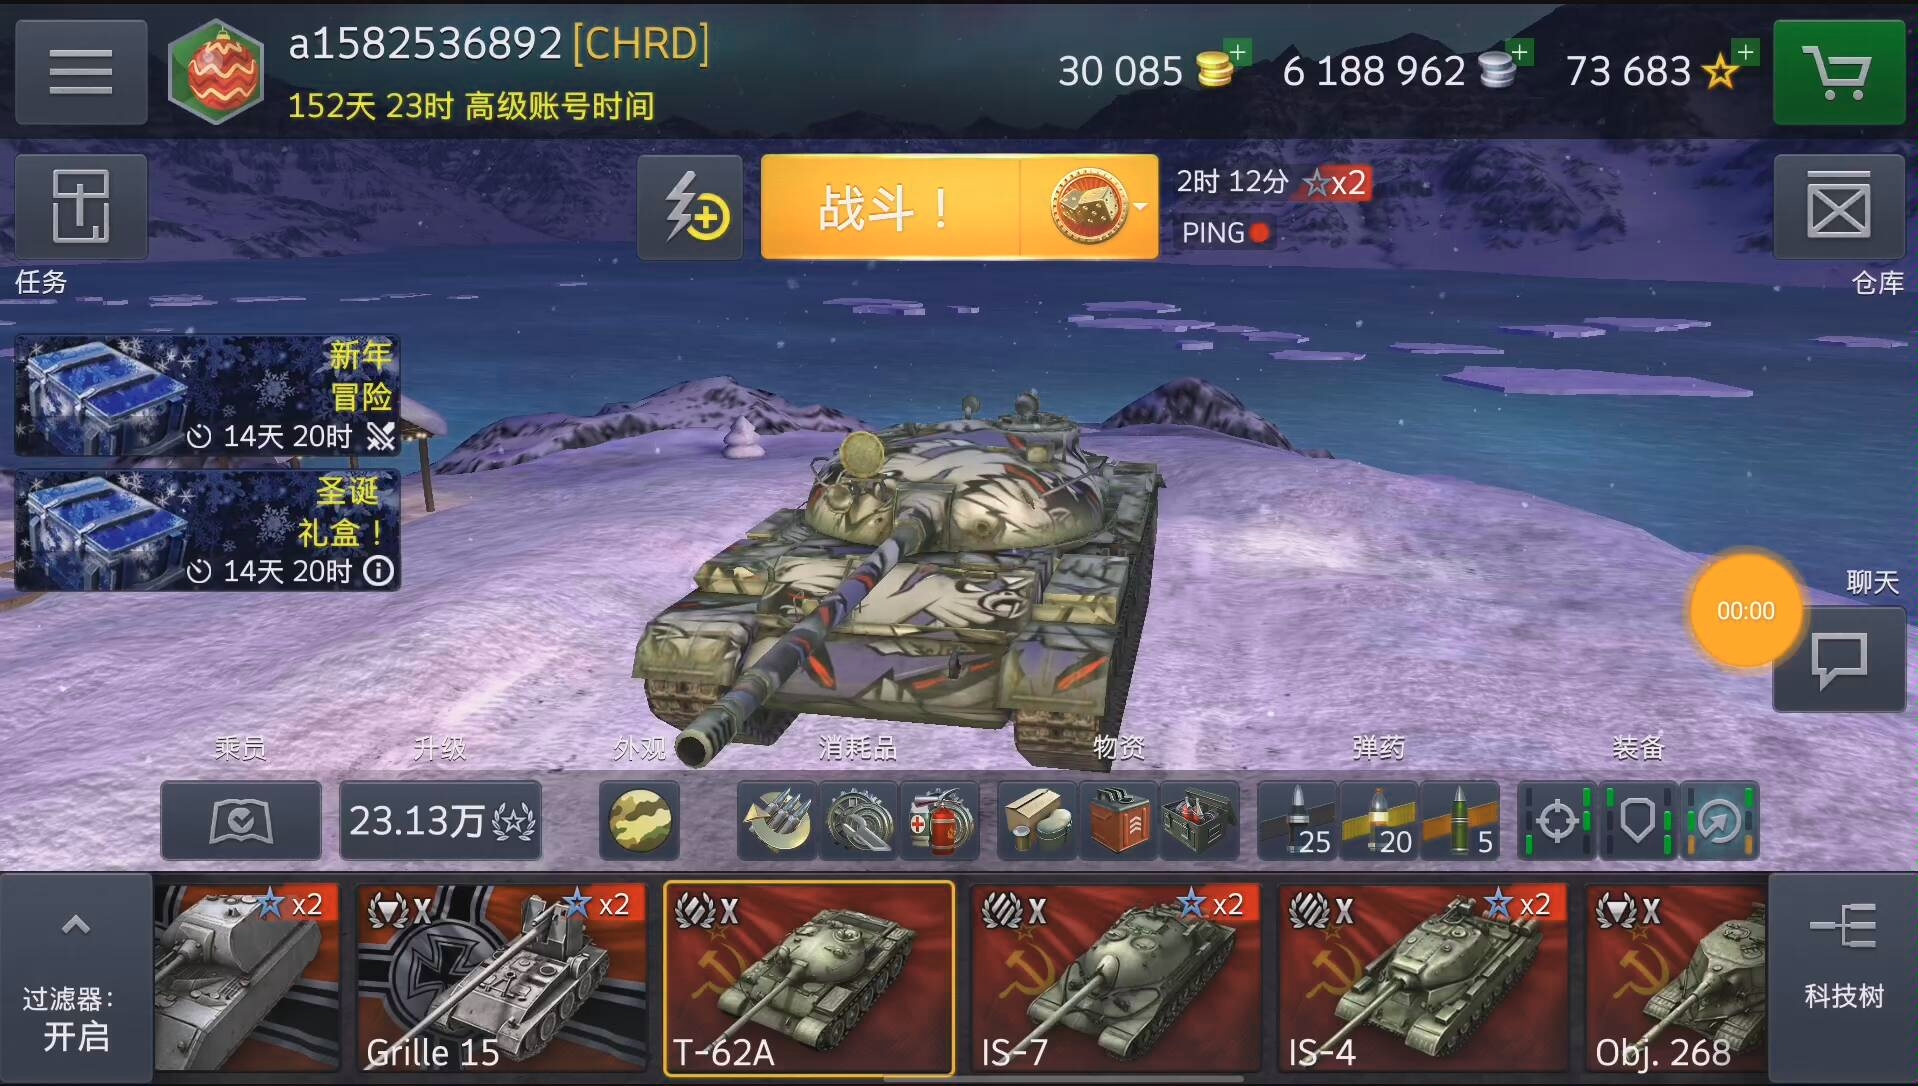 推荐坦克游戏手机_推荐坦克游戏手机_推荐坦克游戏手机